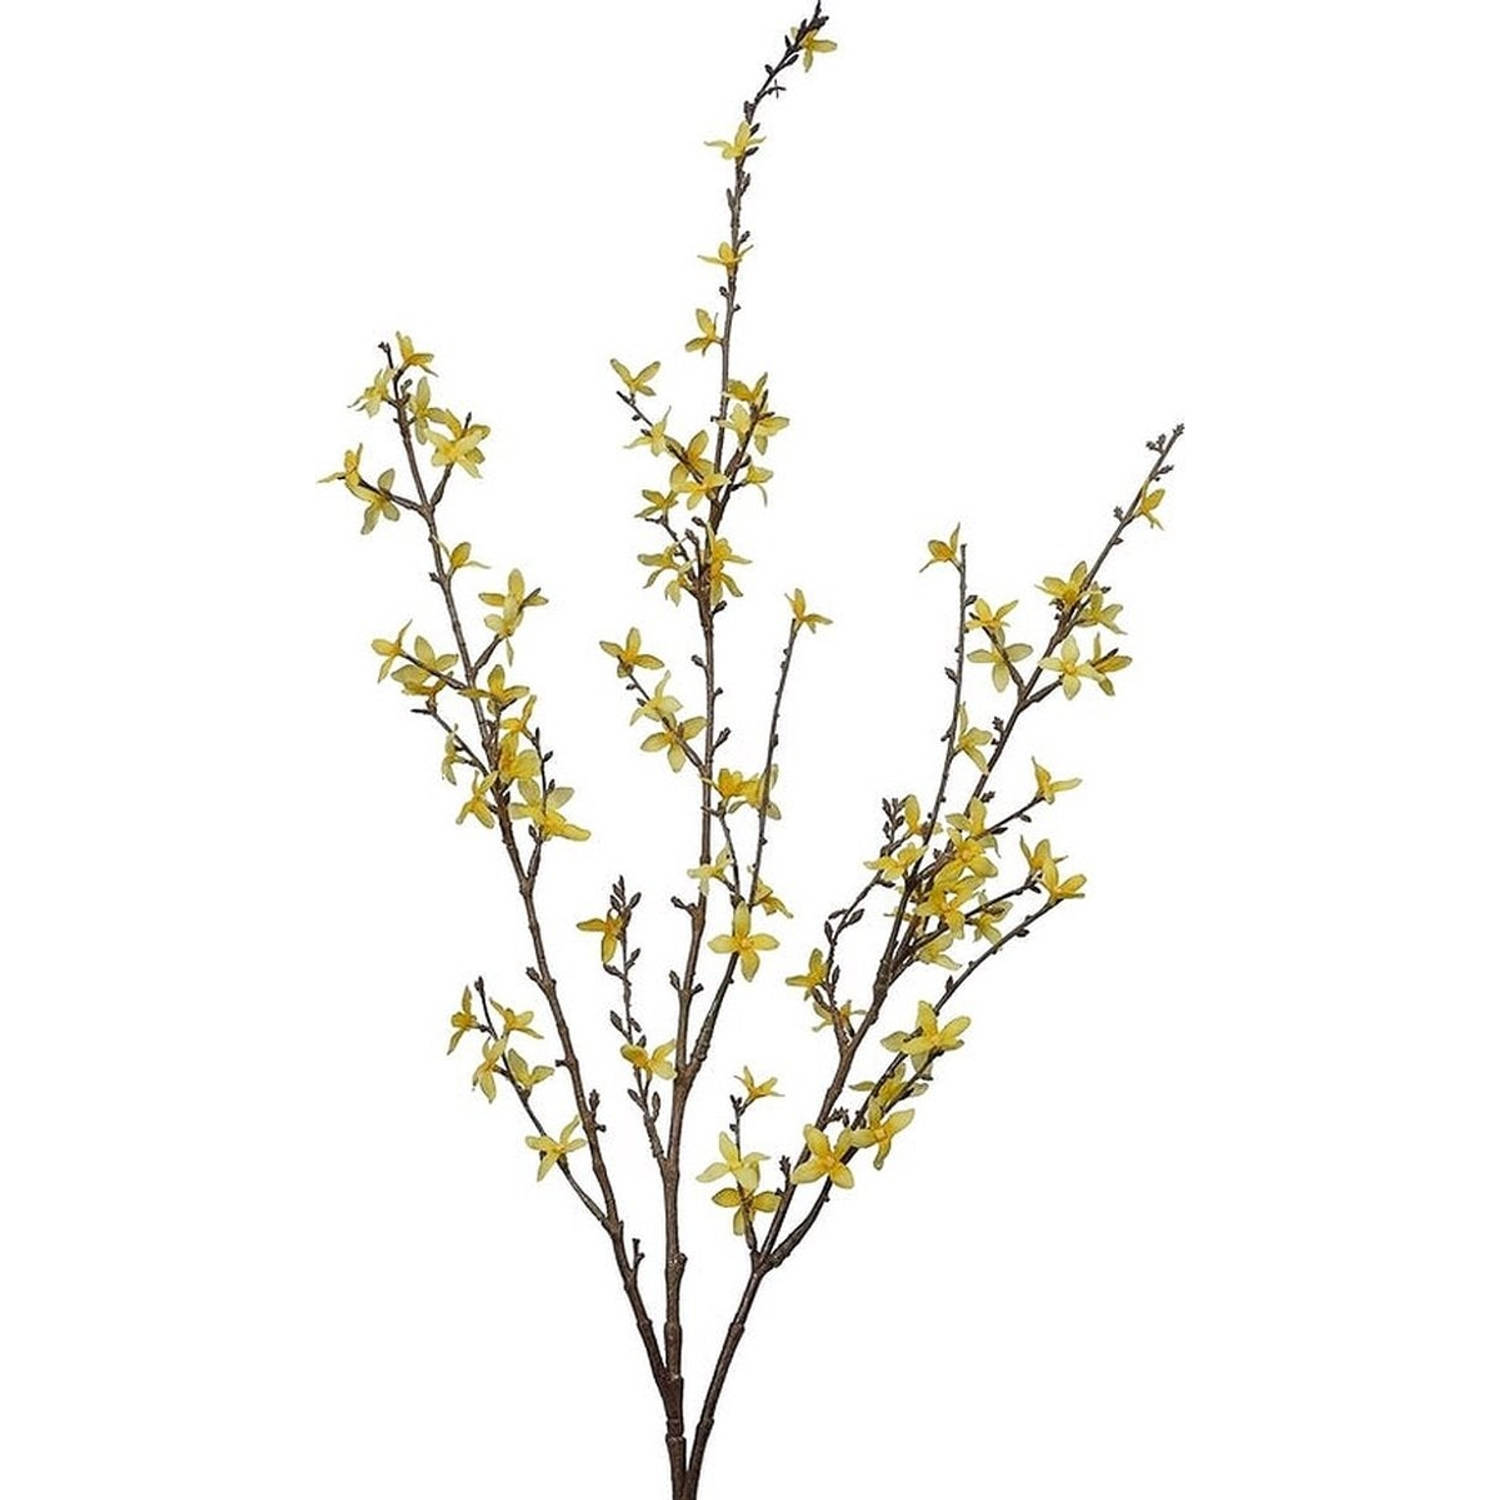 Paastak - Forsythia Tak geel - Lente & paaldecoratie bloemen - Lengte 76cm - B 10cm Hoogte 1,5CM